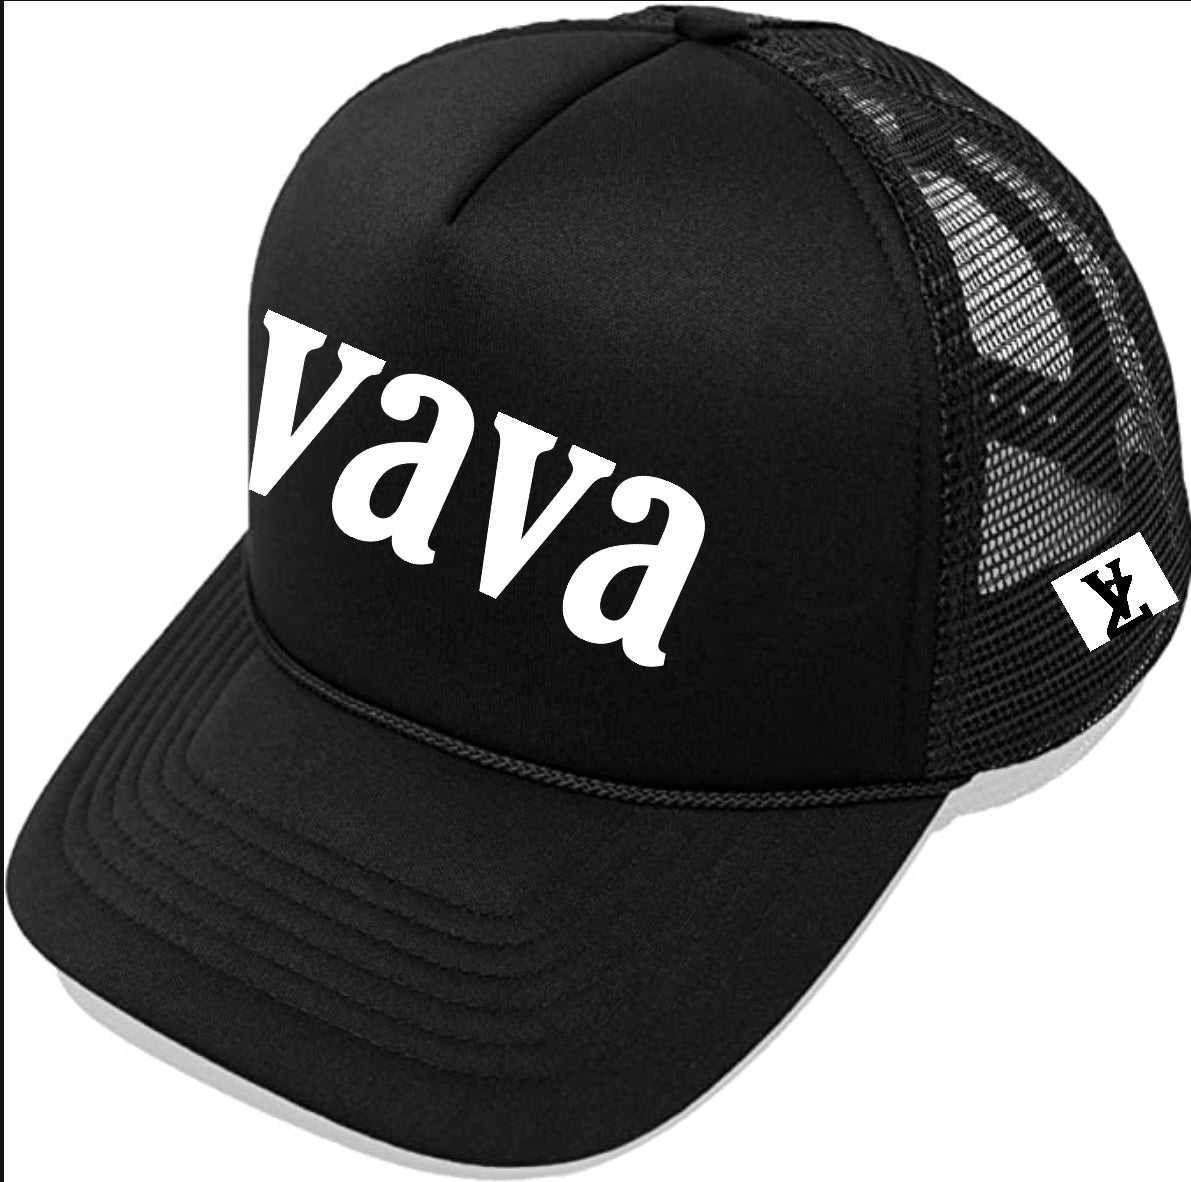 Vava hat